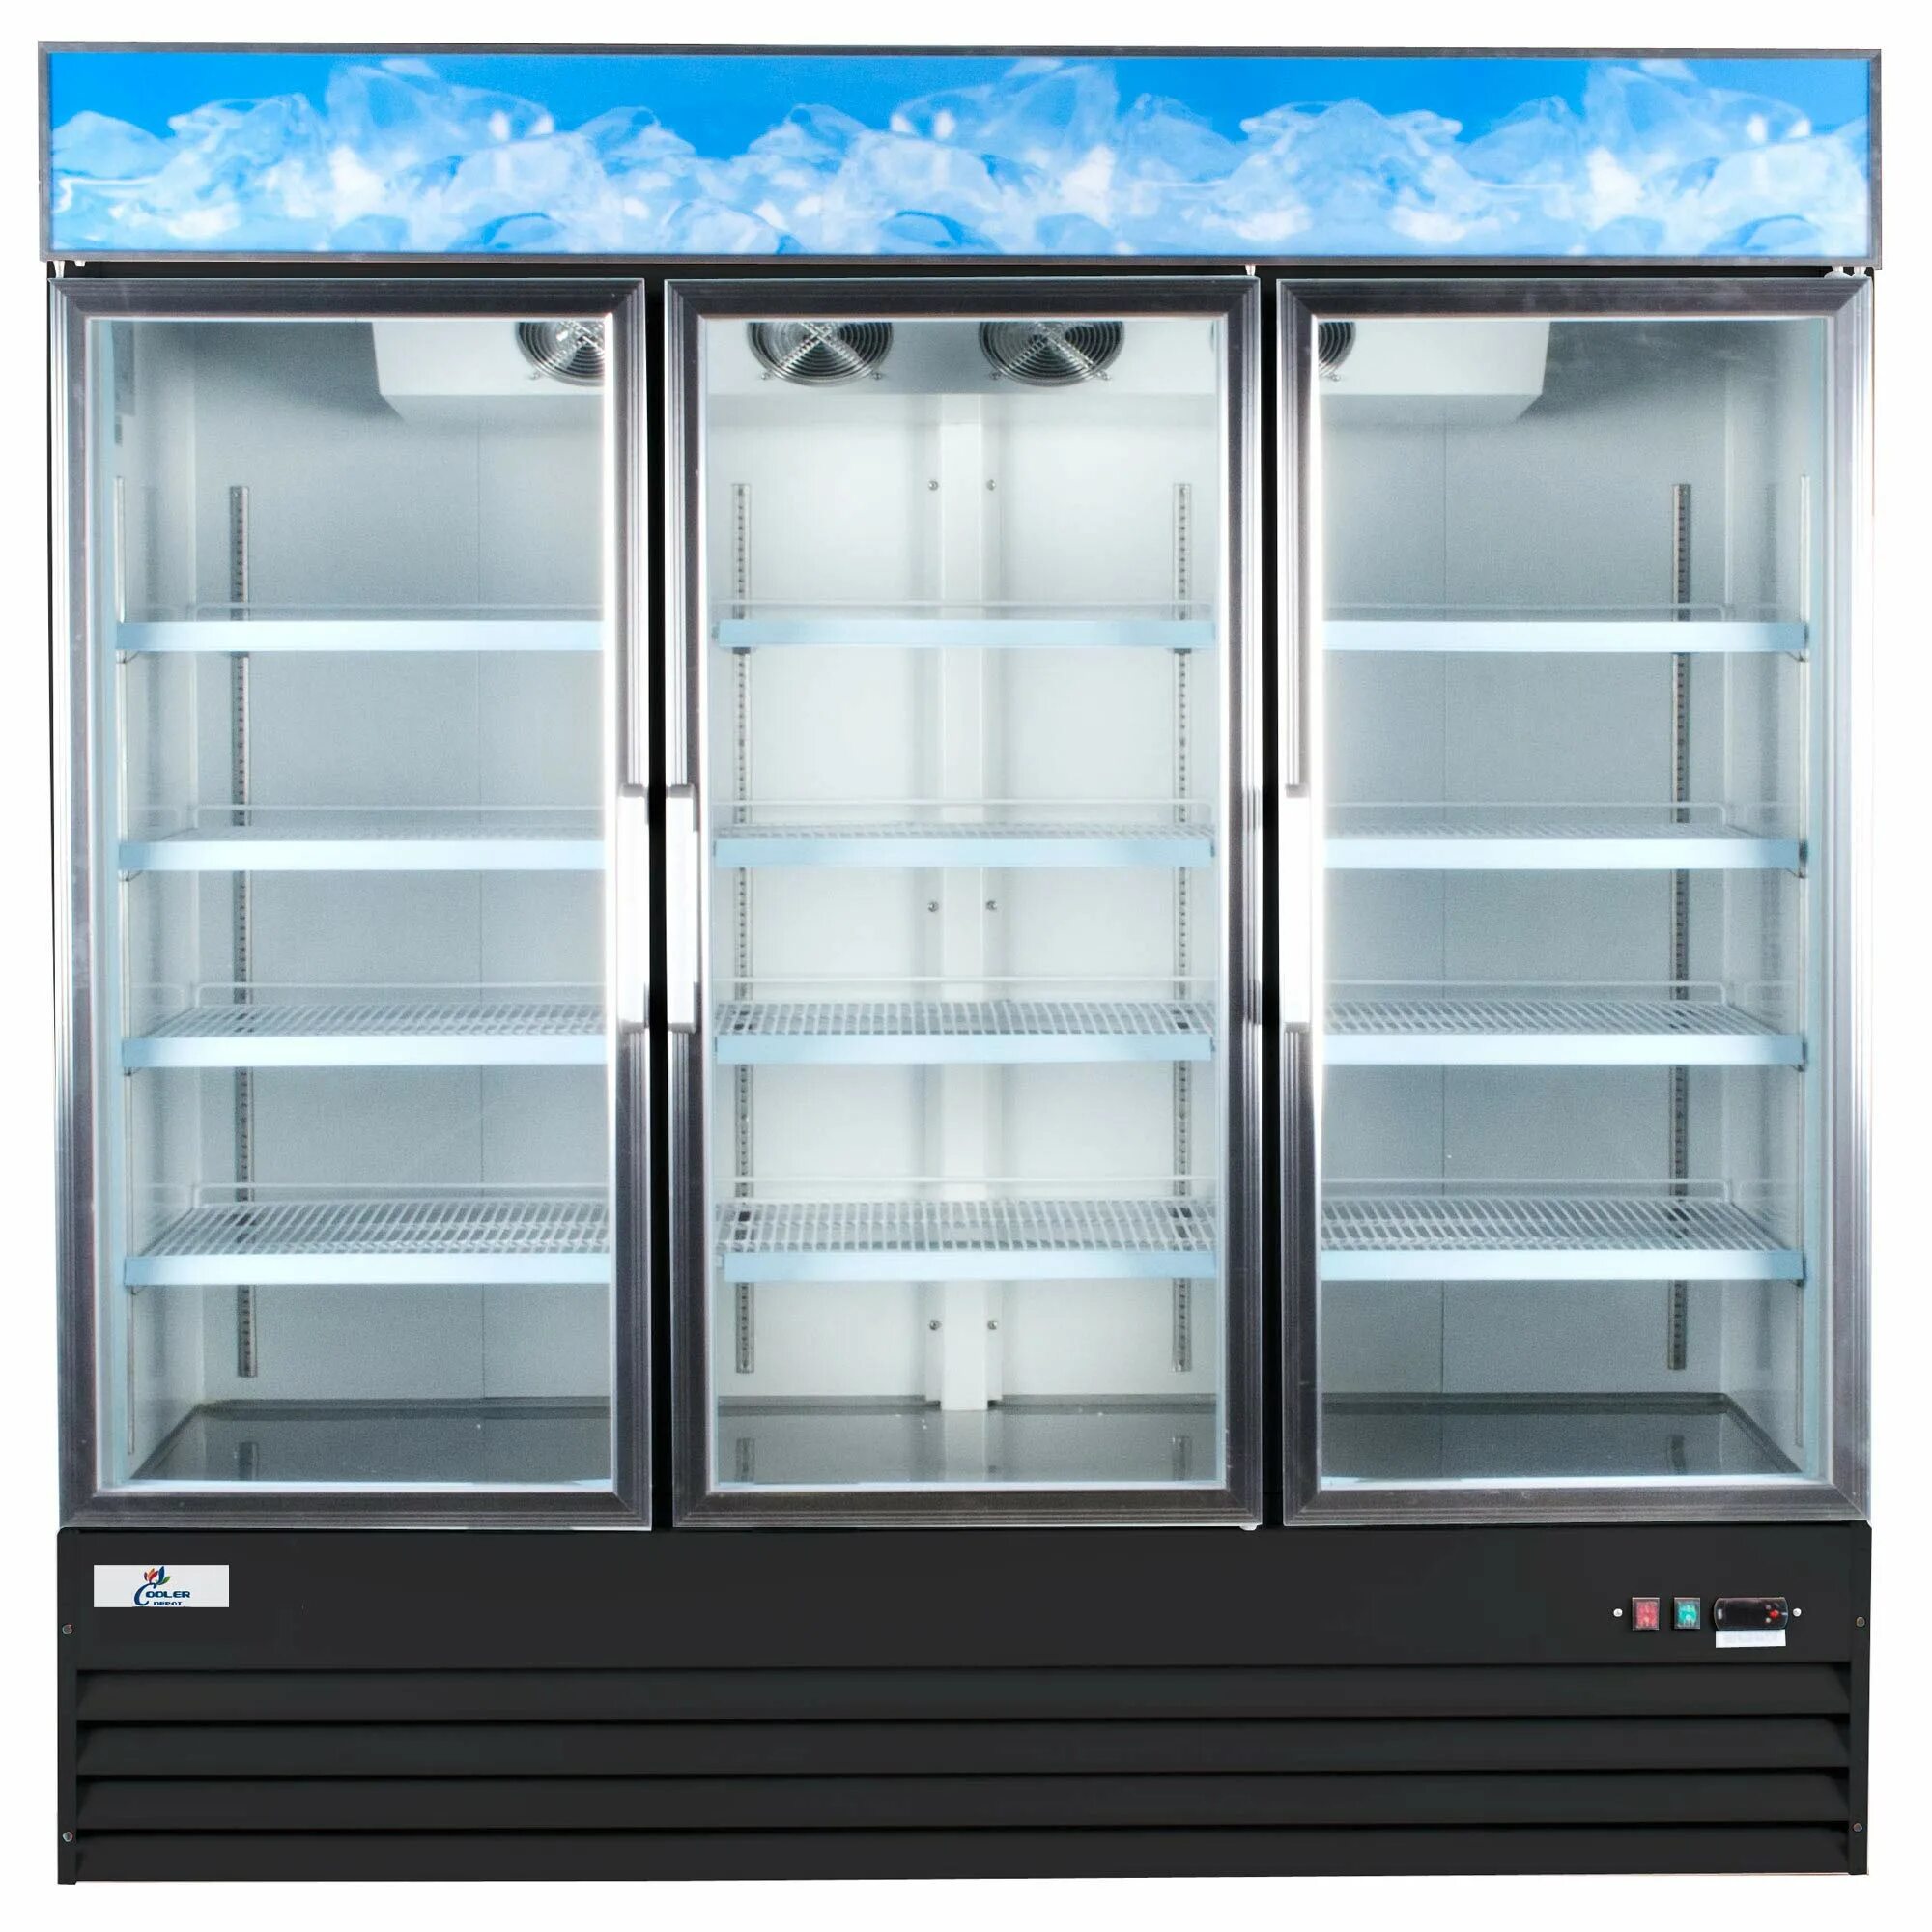 Холодильный шкаф Cold s700. Шкаф холодильный Carboma f700. Холодильный шкаф Carboma r560 (приложение 3.2.). Шкаф холодильный dm110sd-s. Холодильник витрина для магазина